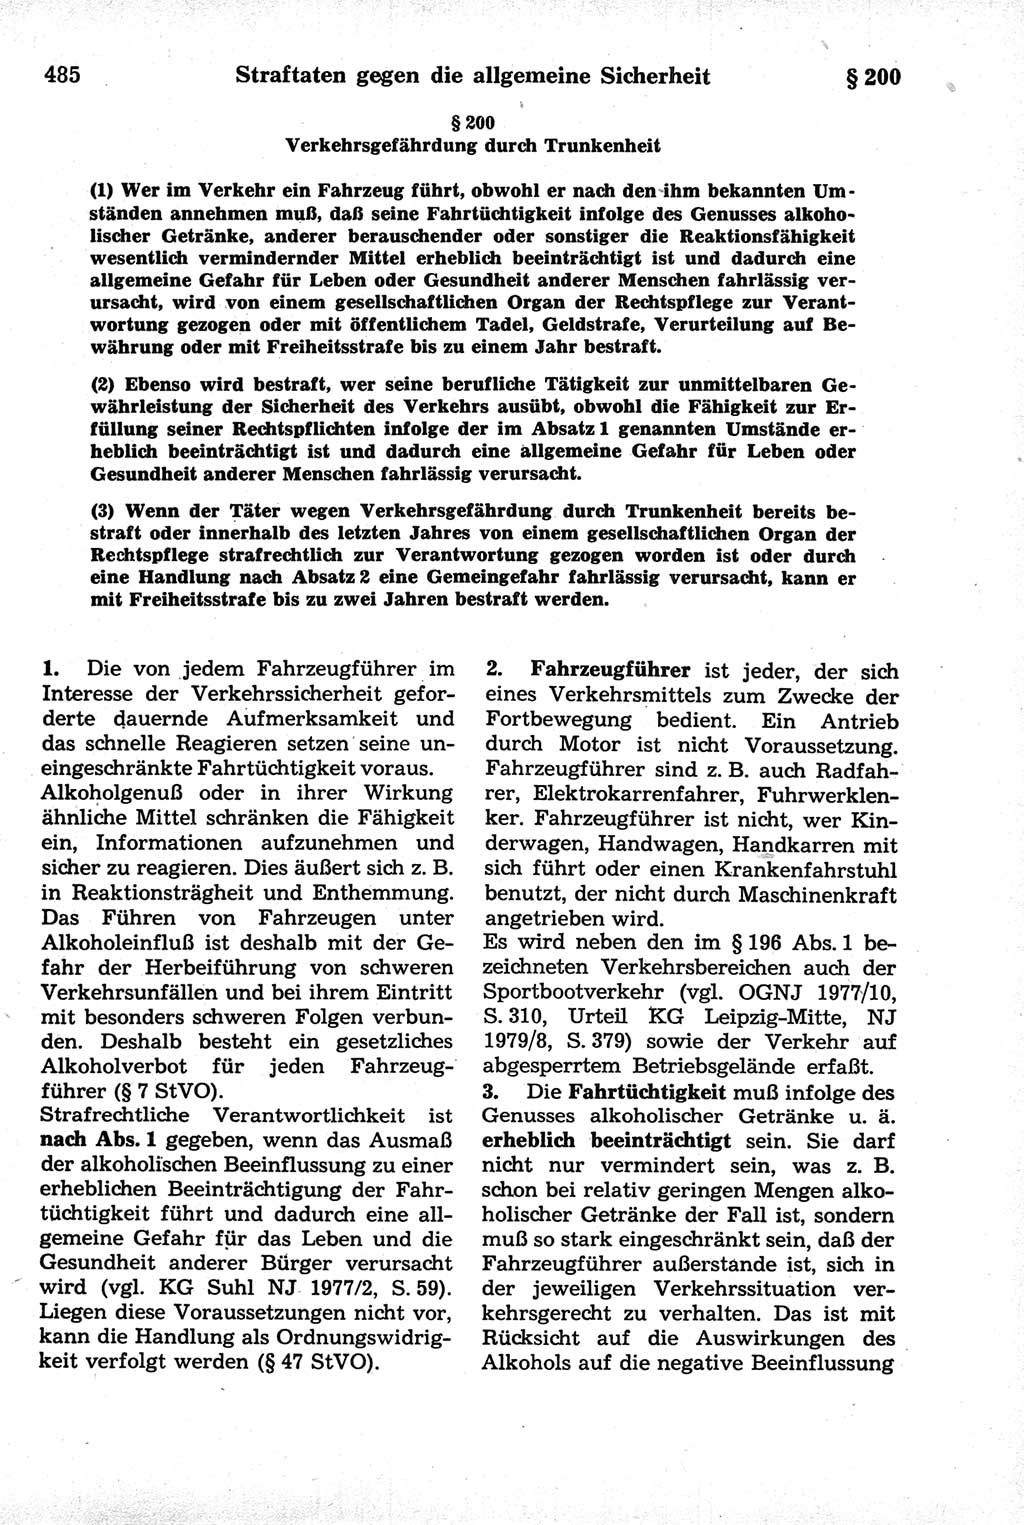 Strafrecht der Deutschen Demokratischen Republik (DDR), Kommentar zum Strafgesetzbuch (StGB) 1981, Seite 485 (Strafr. DDR Komm. StGB 1981, S. 485)